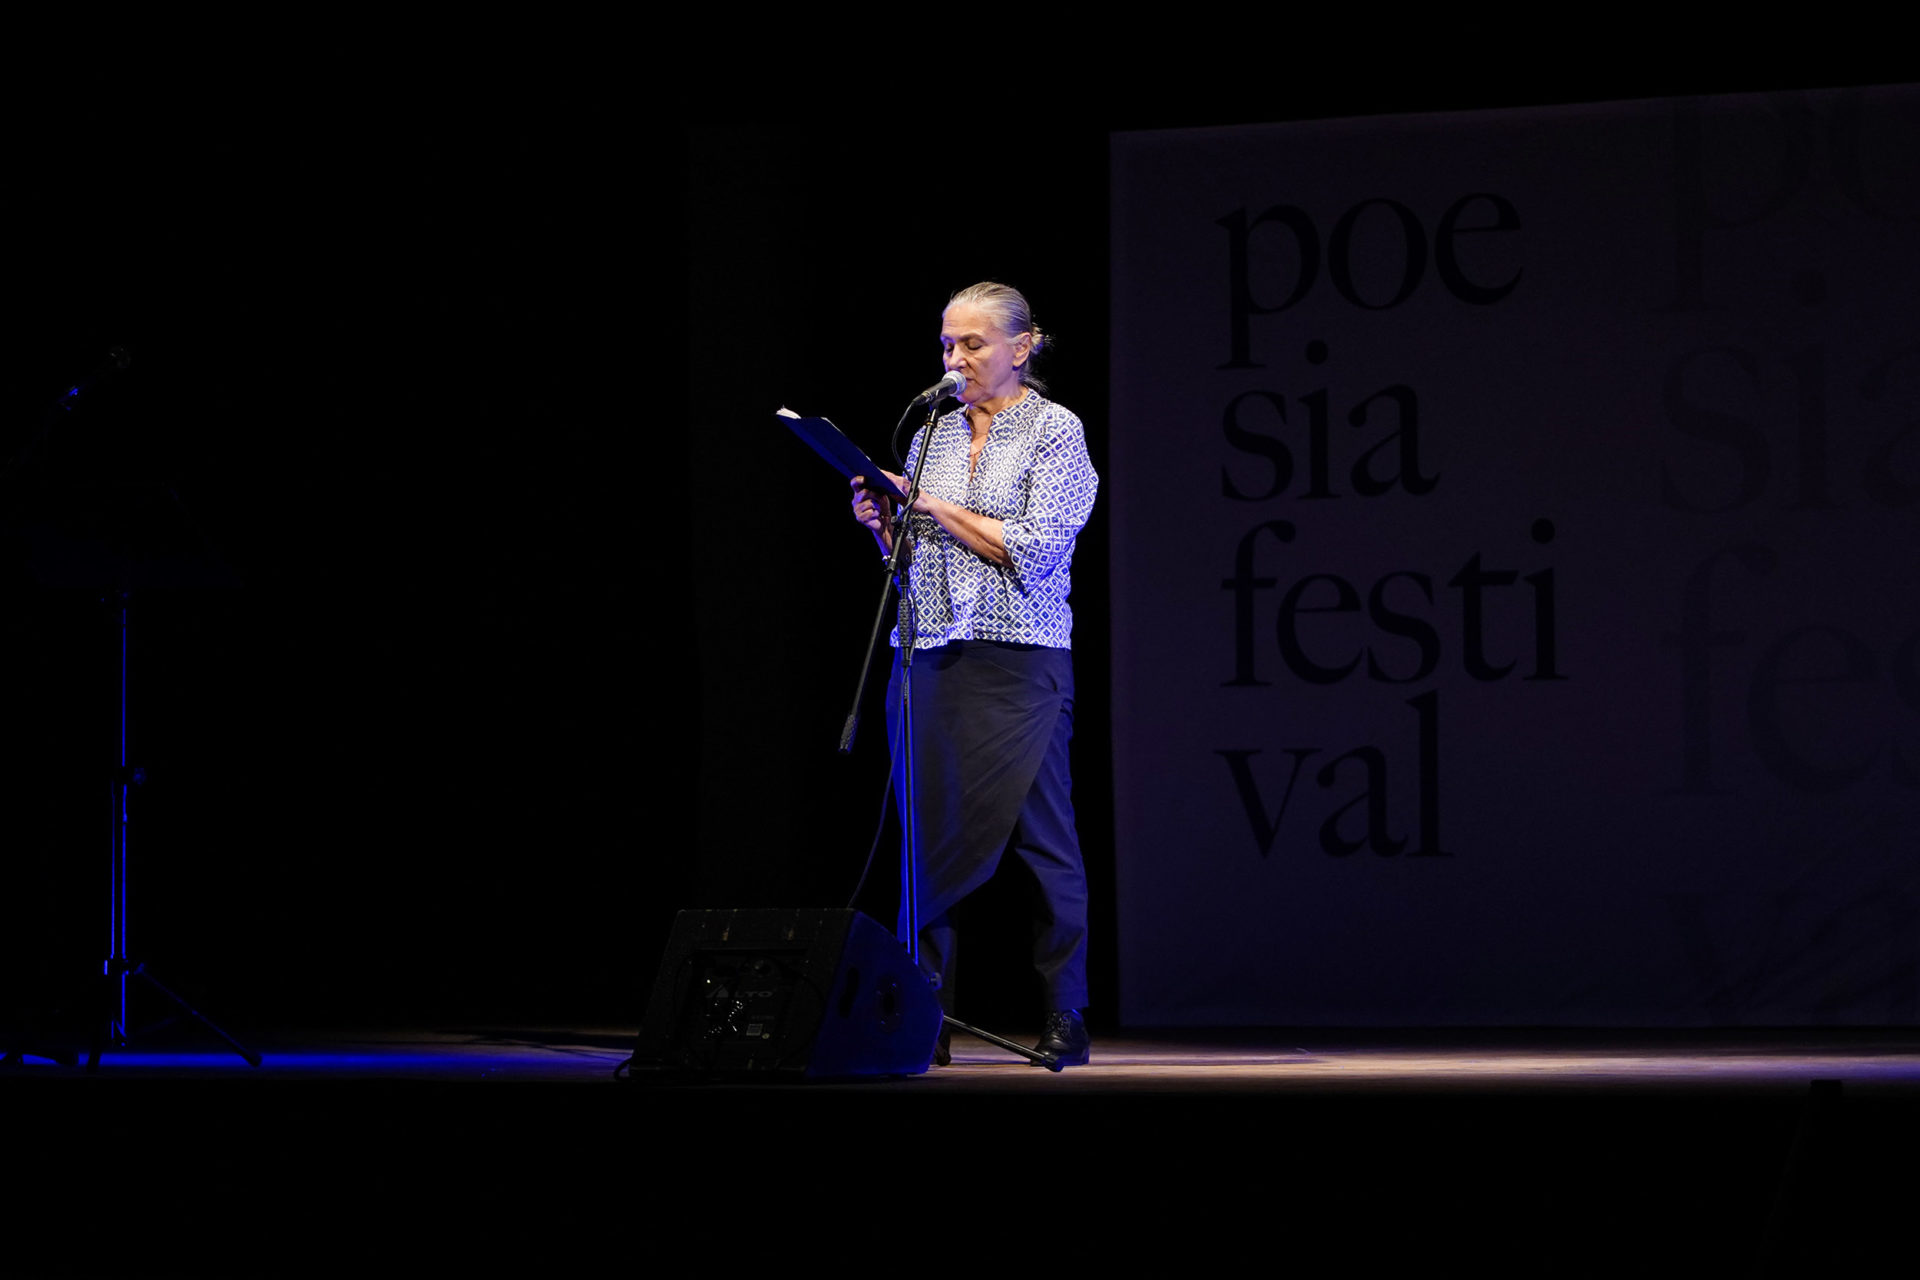 mariangela gualtieri legge giovanni pascoli marano sul panaro poesia festival 2019 modena 6